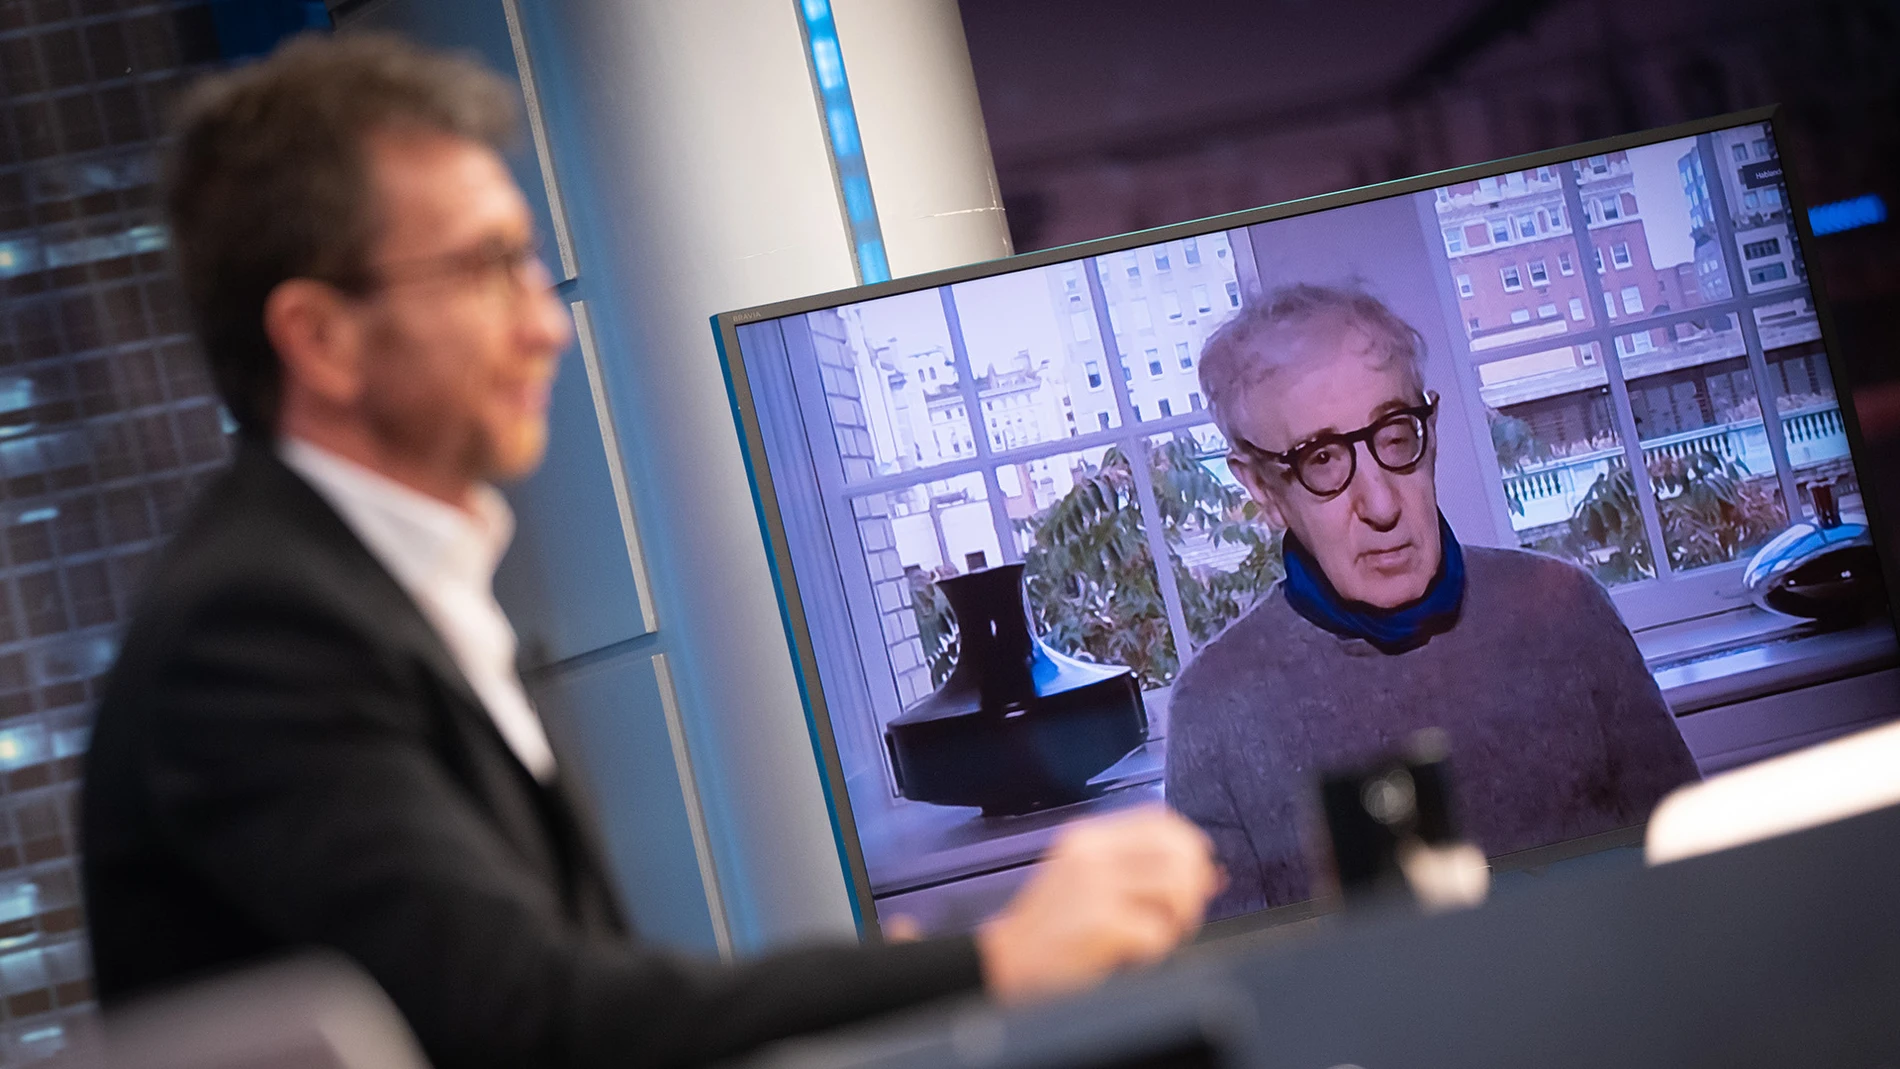 La decisión de Woody Allen para mejorar su trabajo: "No he leído ni una entrevista ni una crítica sobre mí desde hace 45 años"